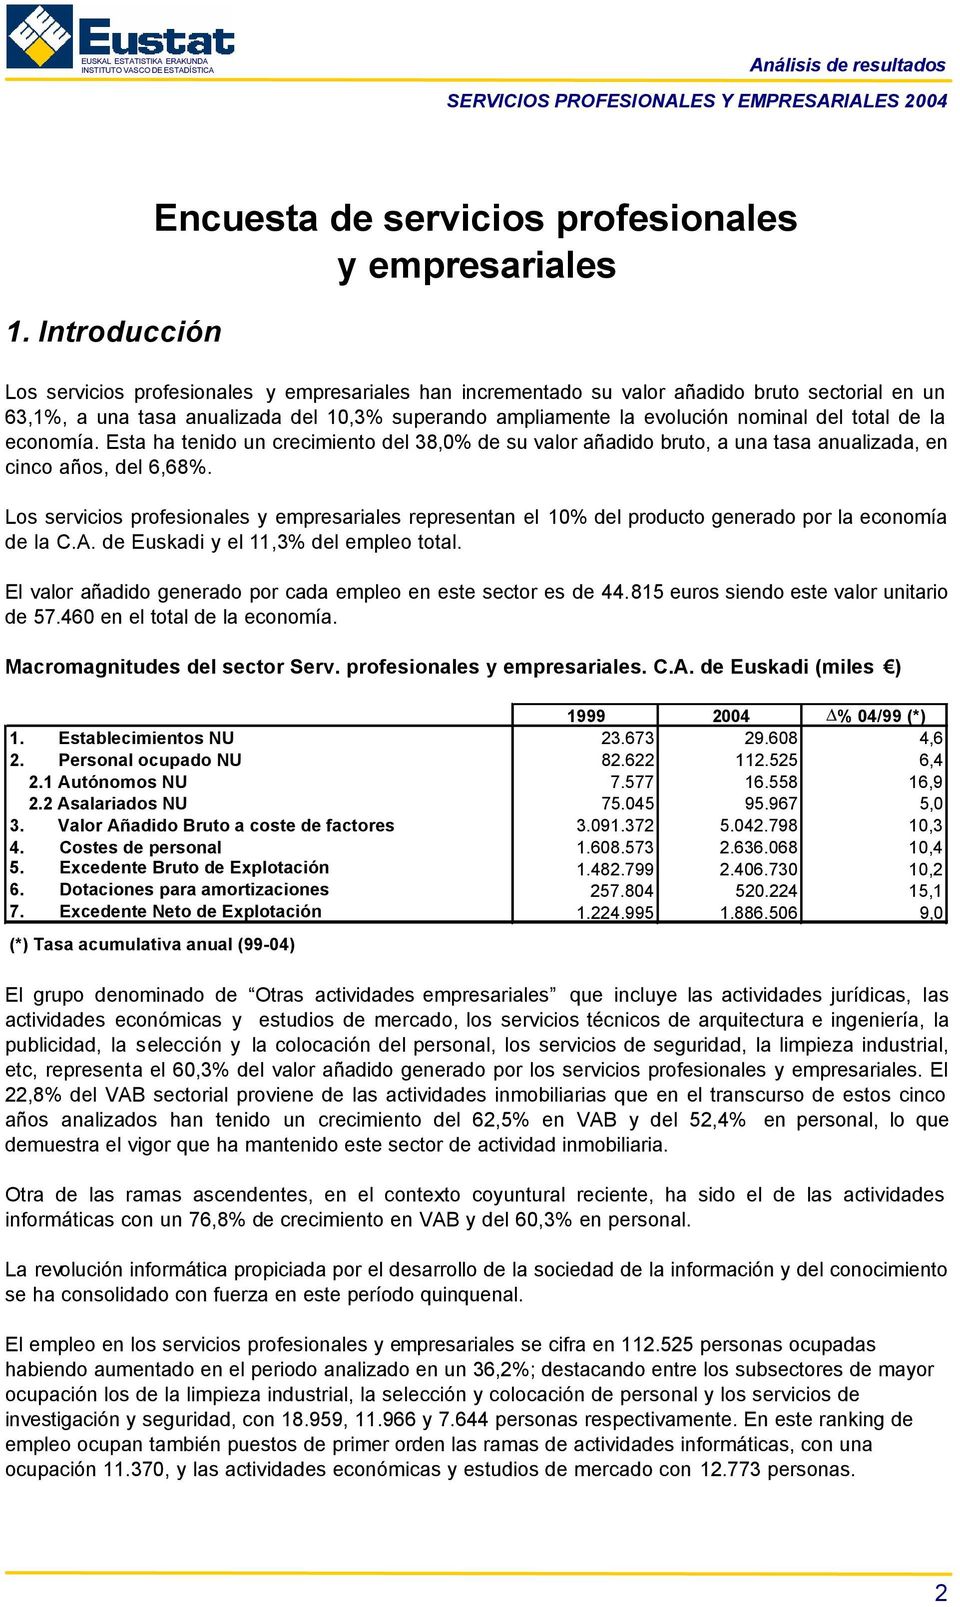 Los servicios profesionales y empresariales representan el 10% del producto generado por la economía de la C.A. de Euskadi y el 11,3% del empleo total.